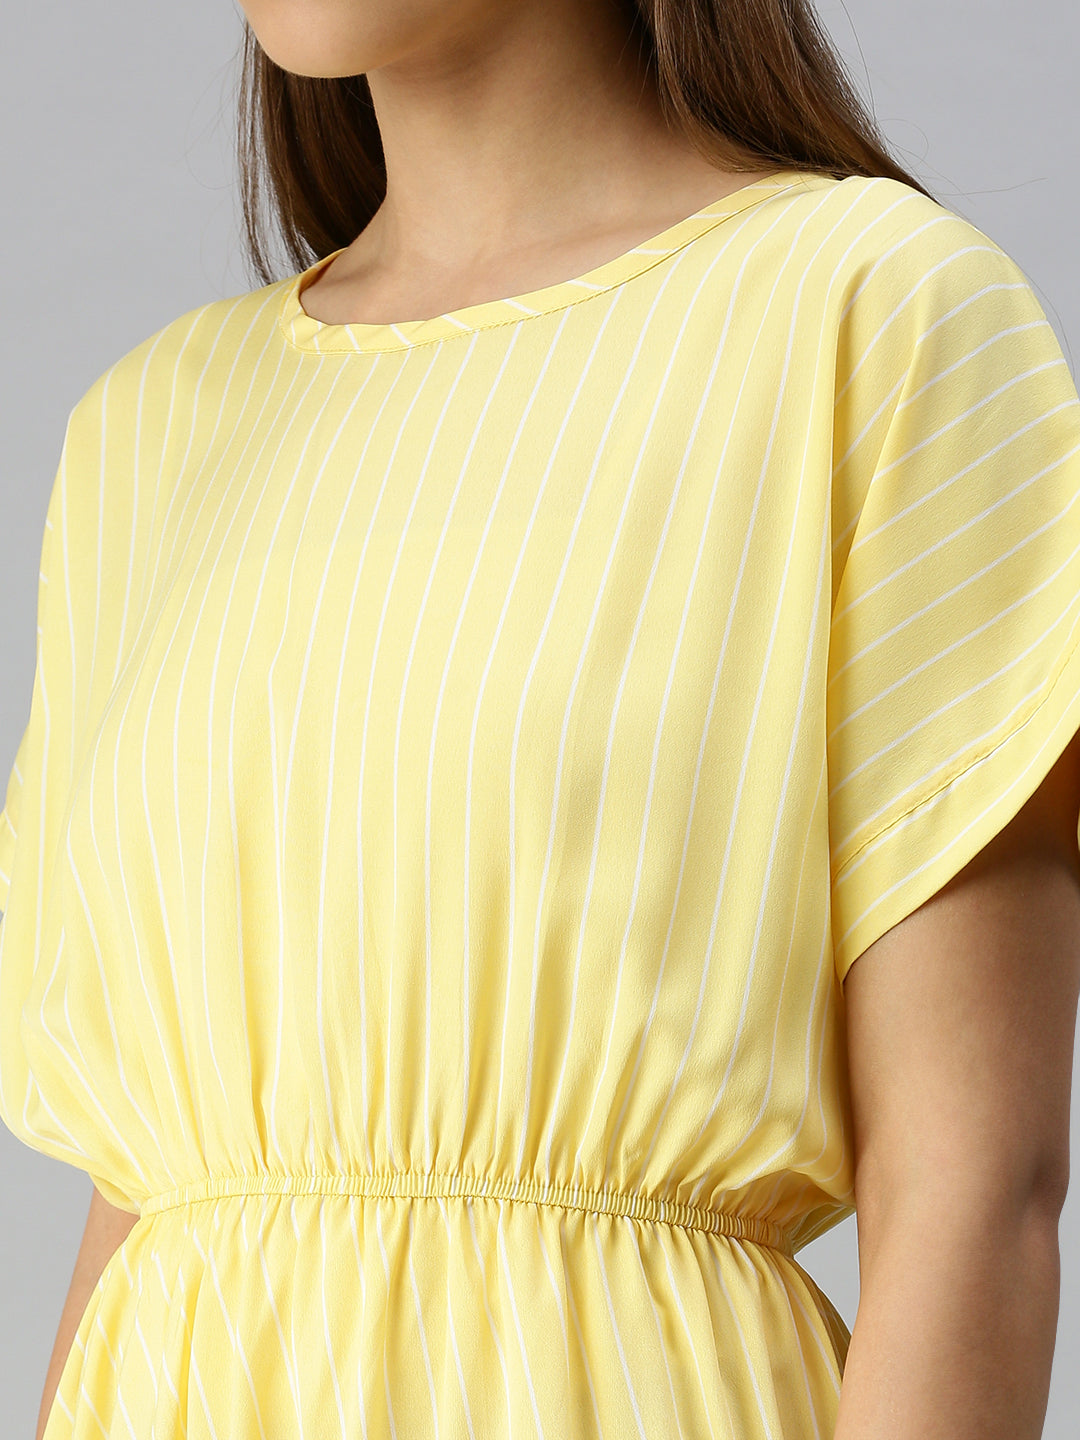 Women Yellow Striped A-Line Dress